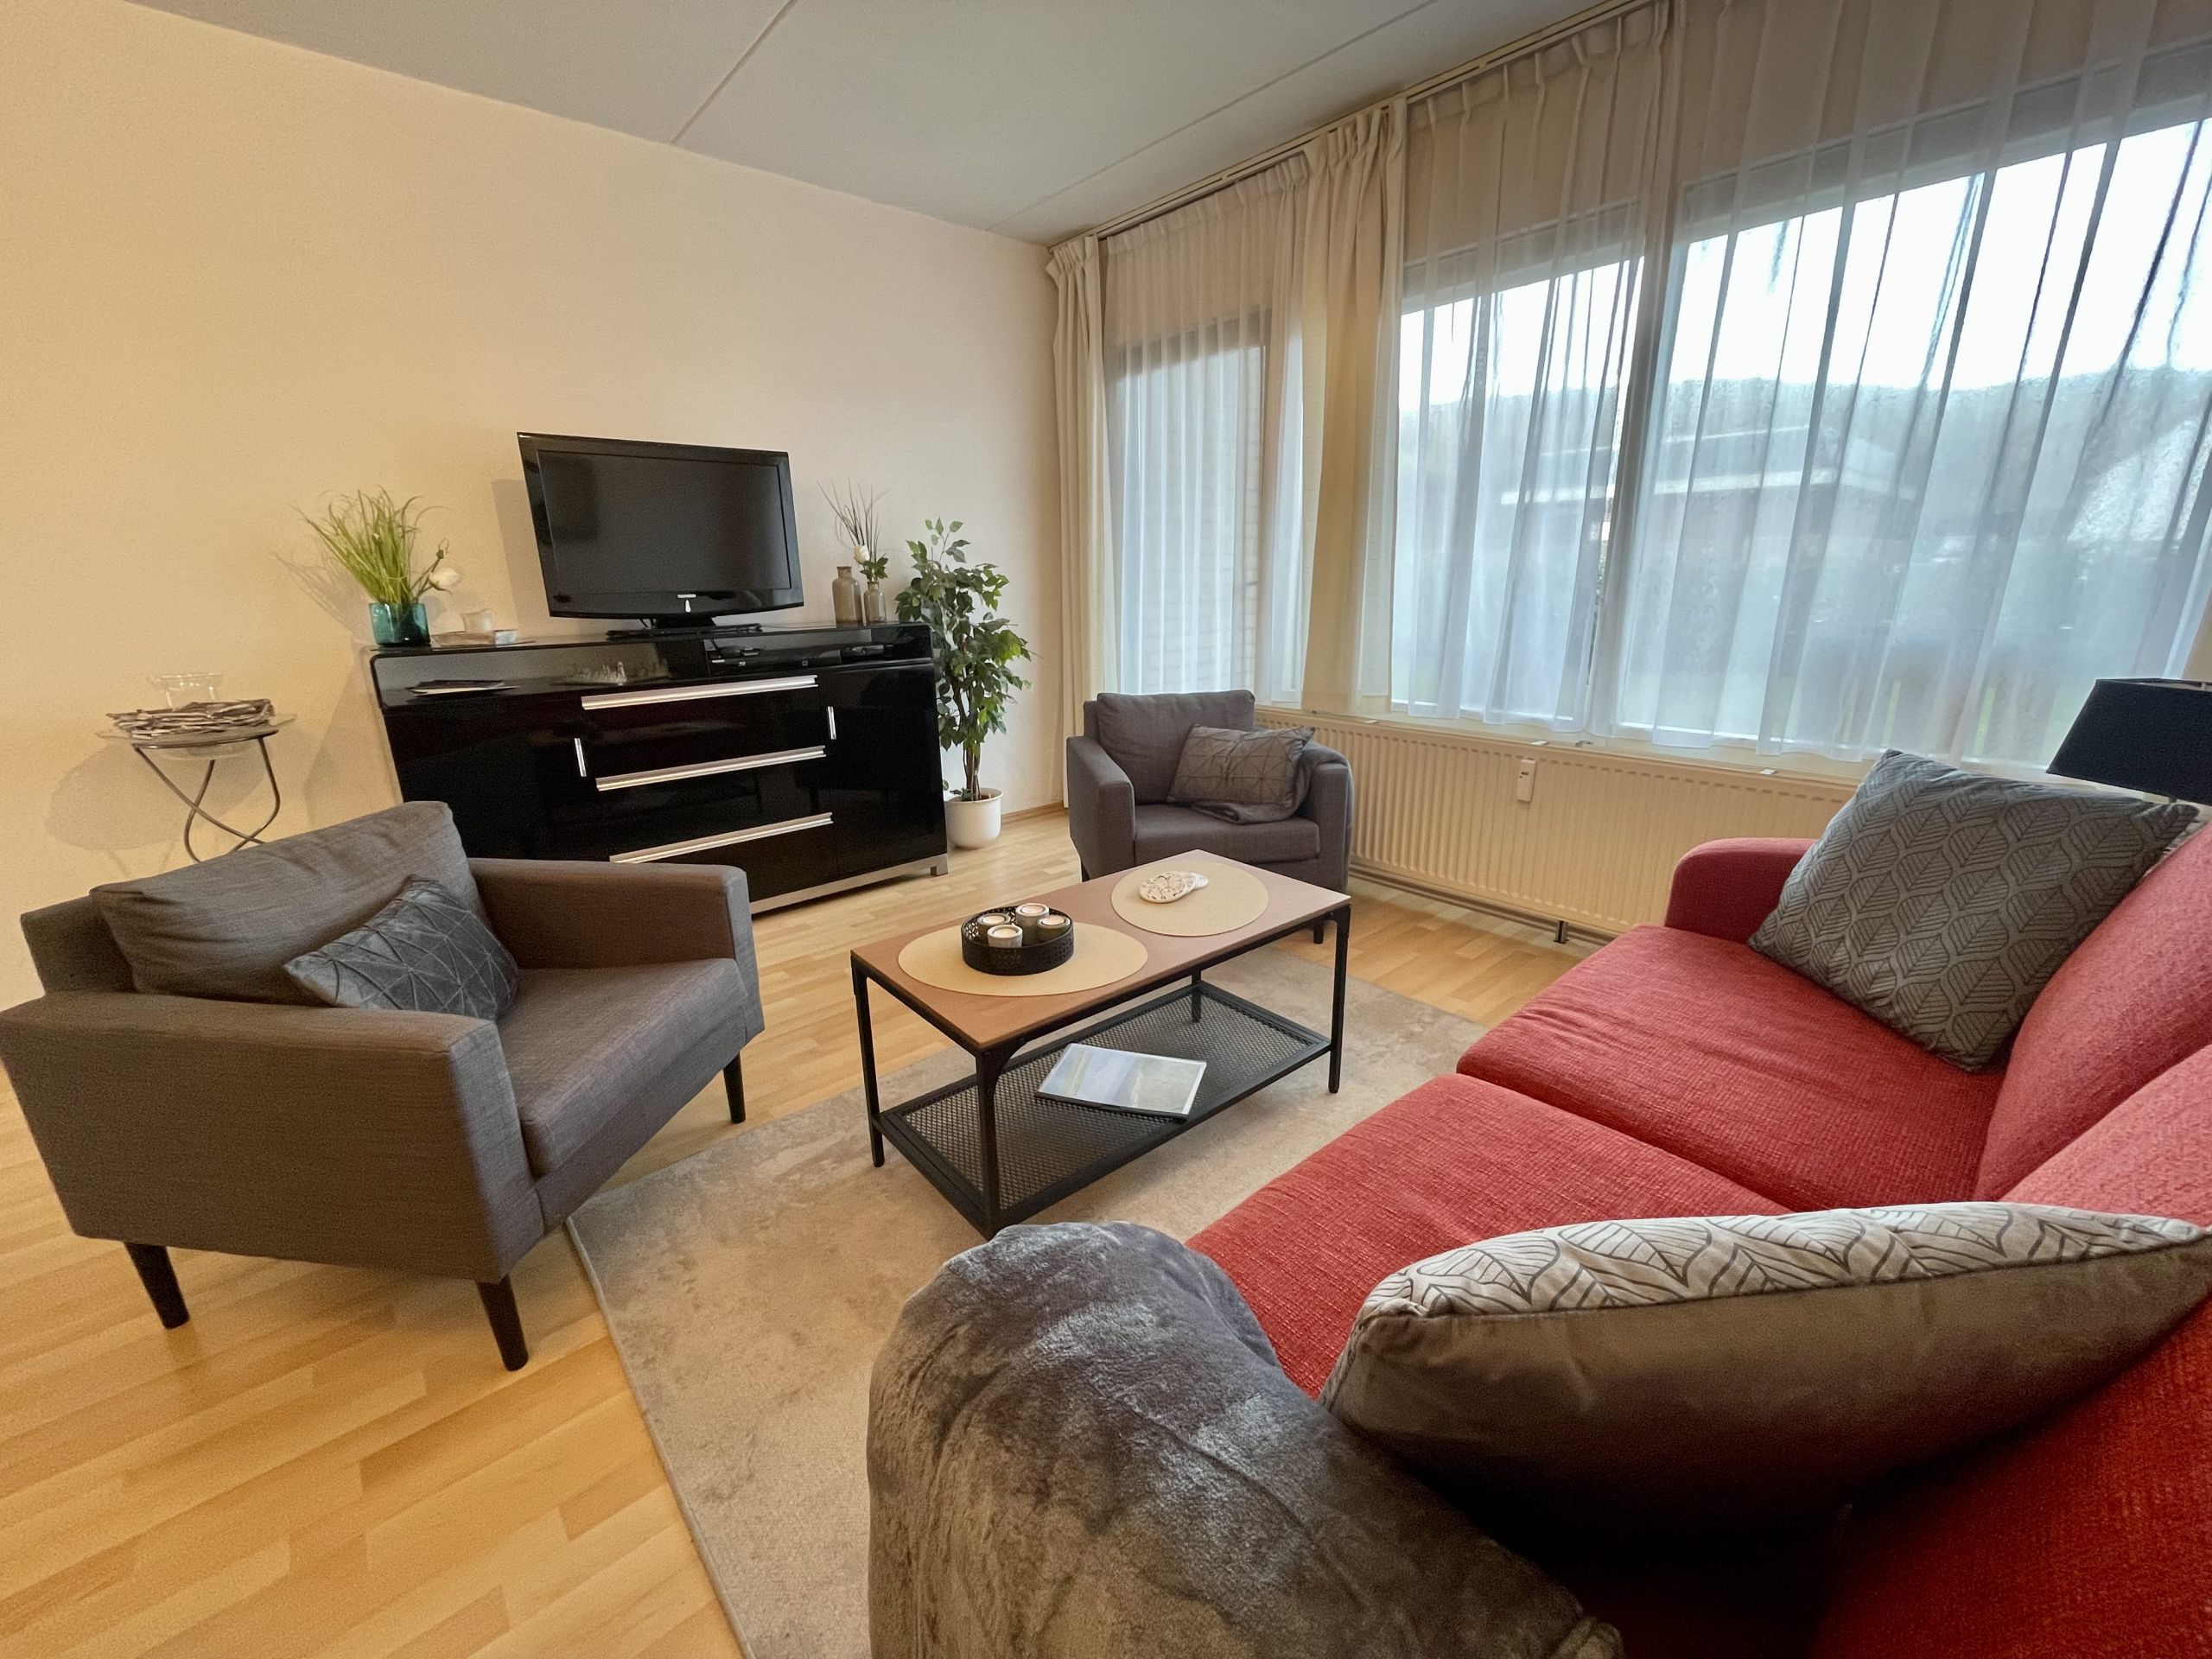 Foto Wohnzimmer Beach Appartement 3 mit Fernseher auf einem Sideboard, Sofa und Sesseln